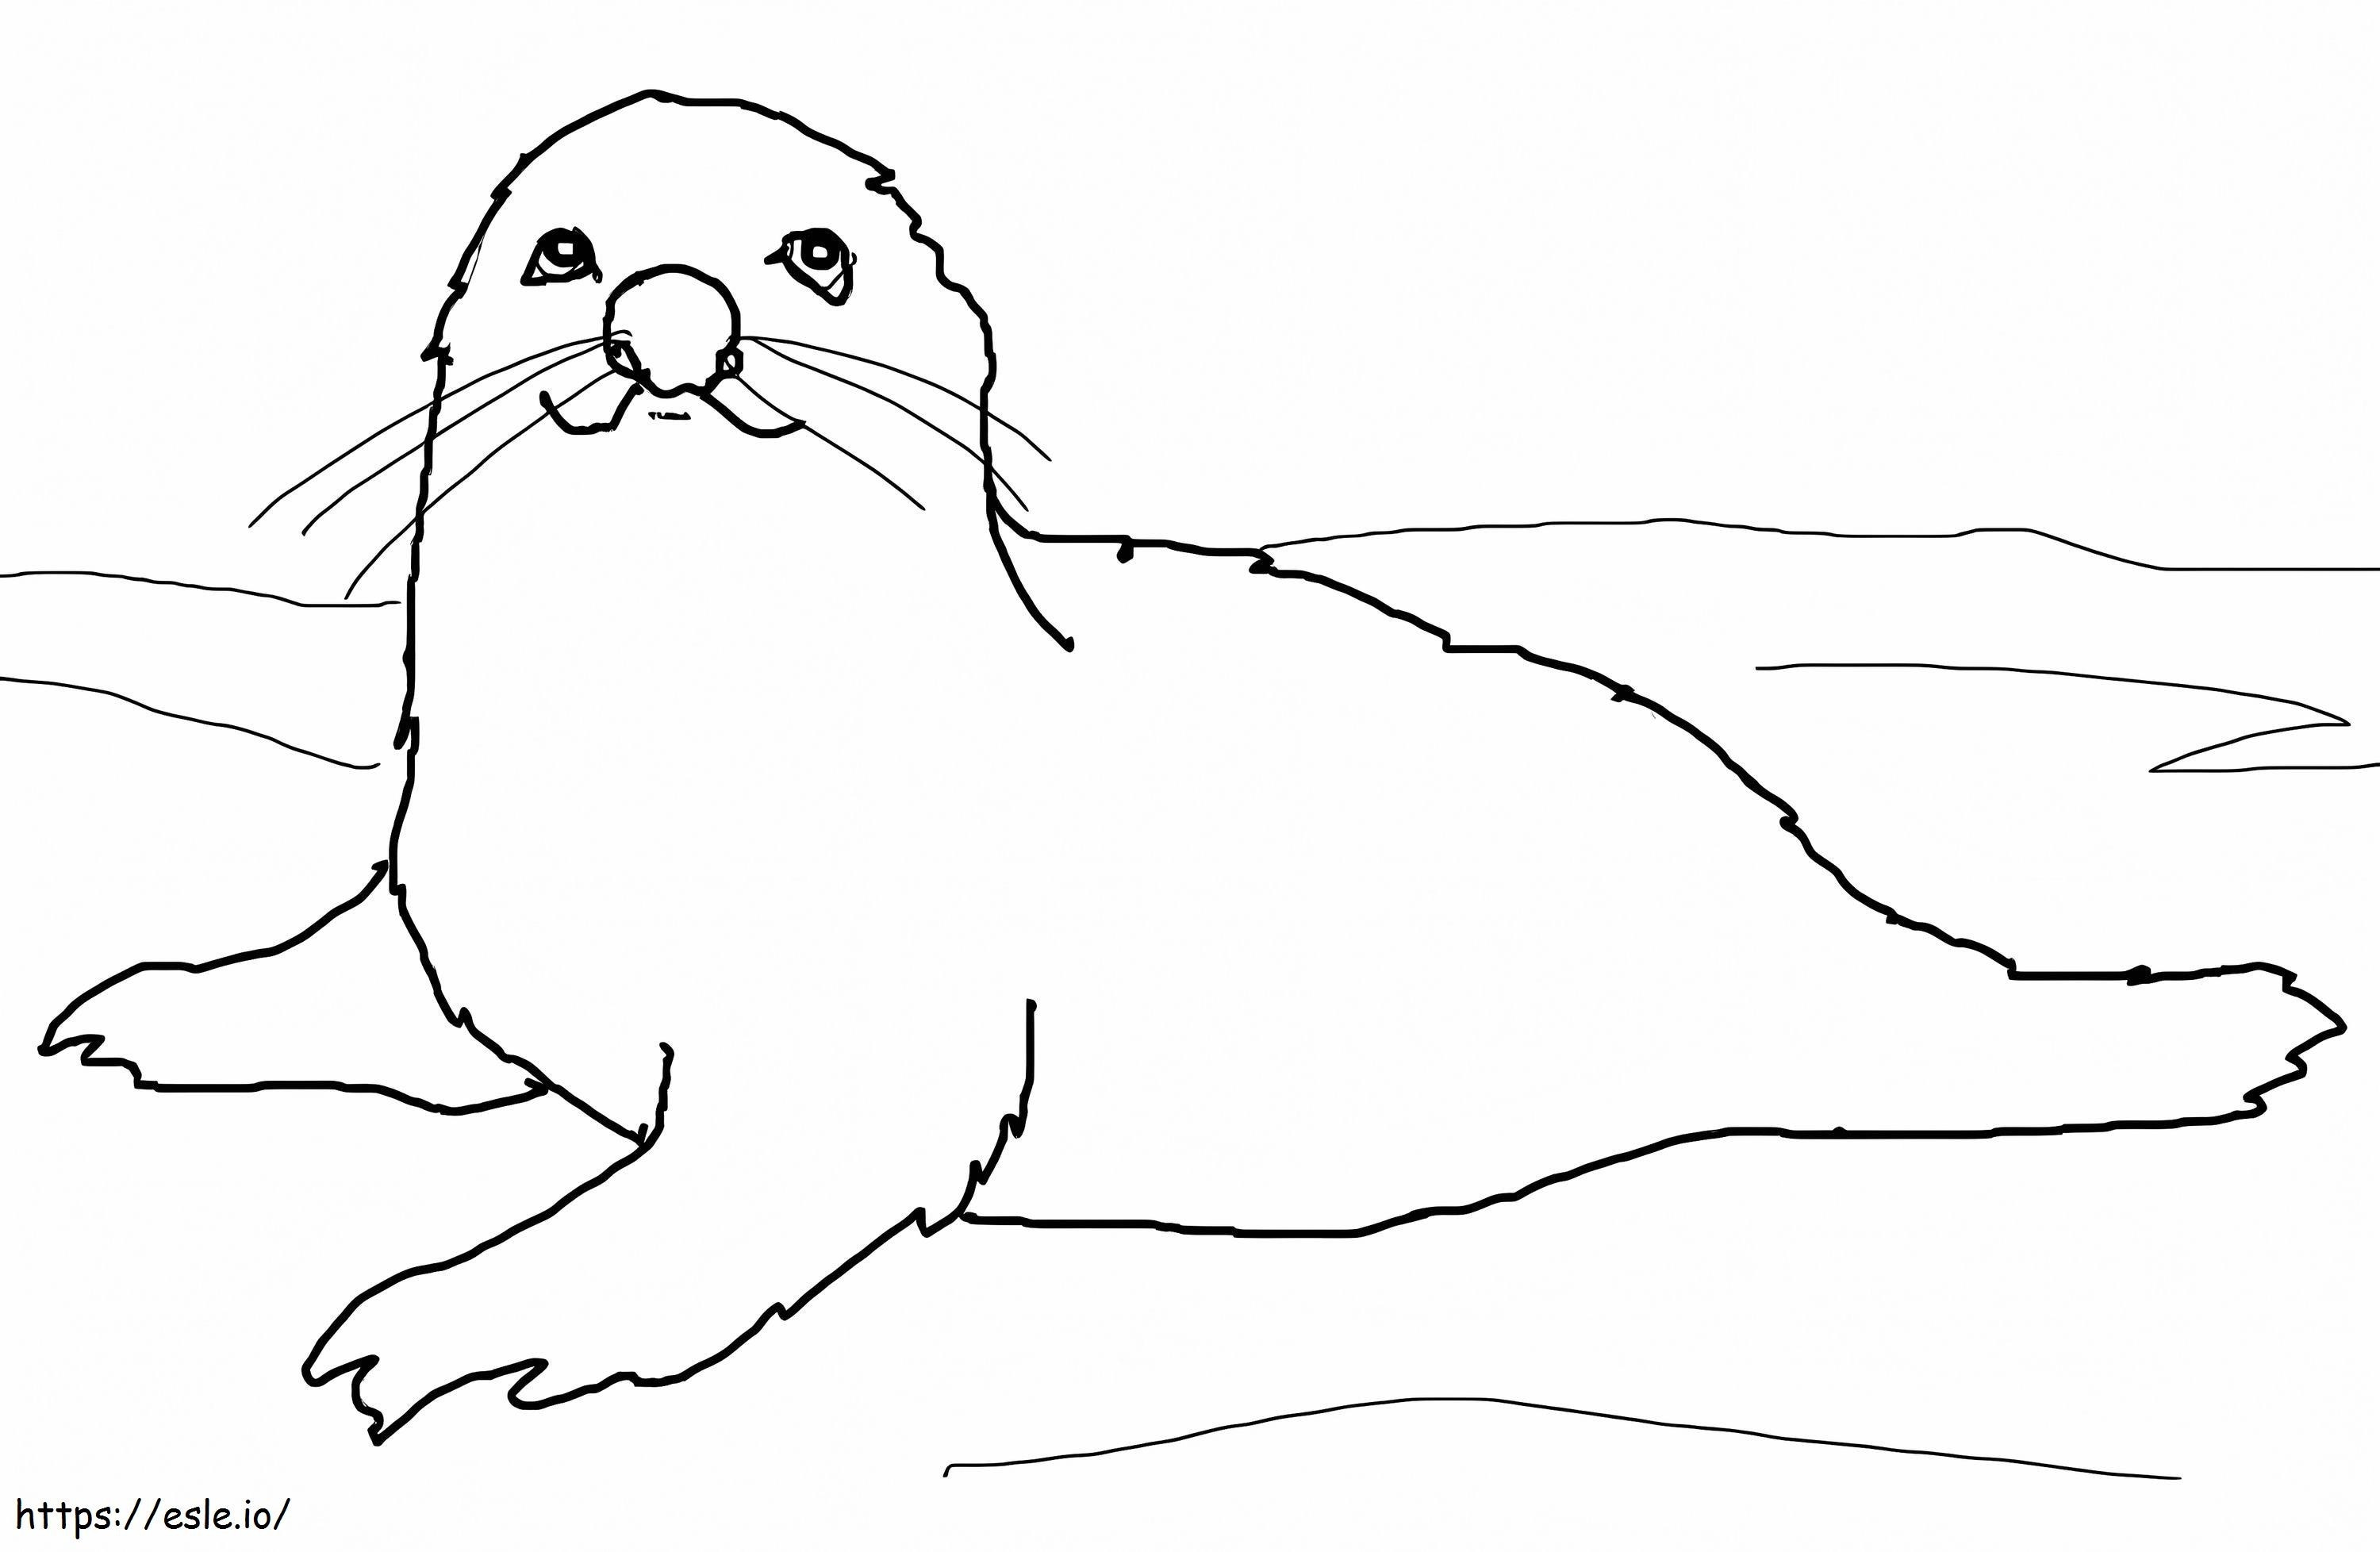 Cucciolo di foca arpa da colorare